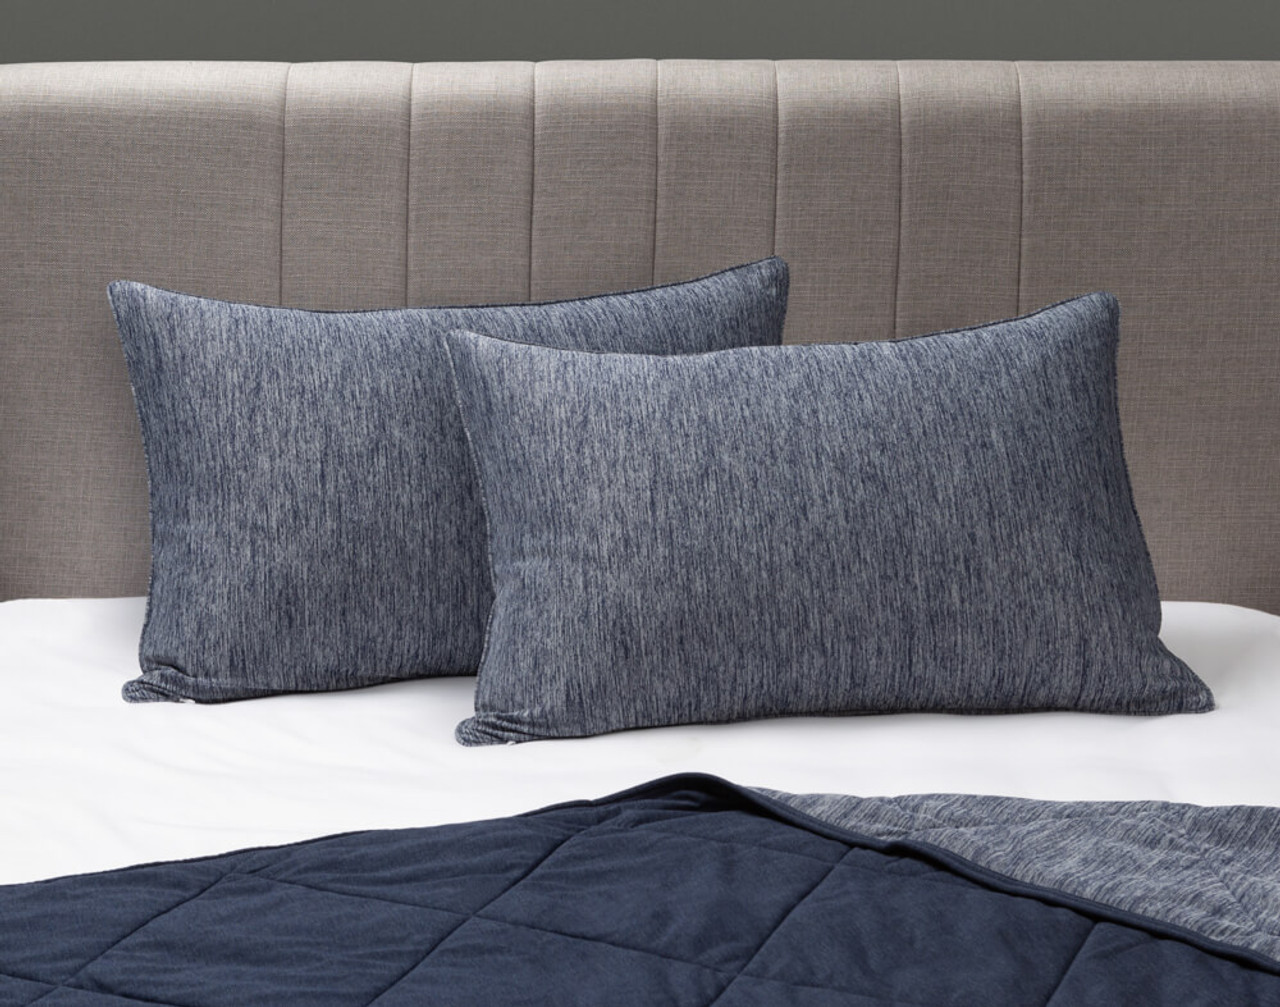 Nos taies d'oreiller Cool Touch en bleu marine sont posées sur un lit blanc et gris avec une couverture assortie en dessous.